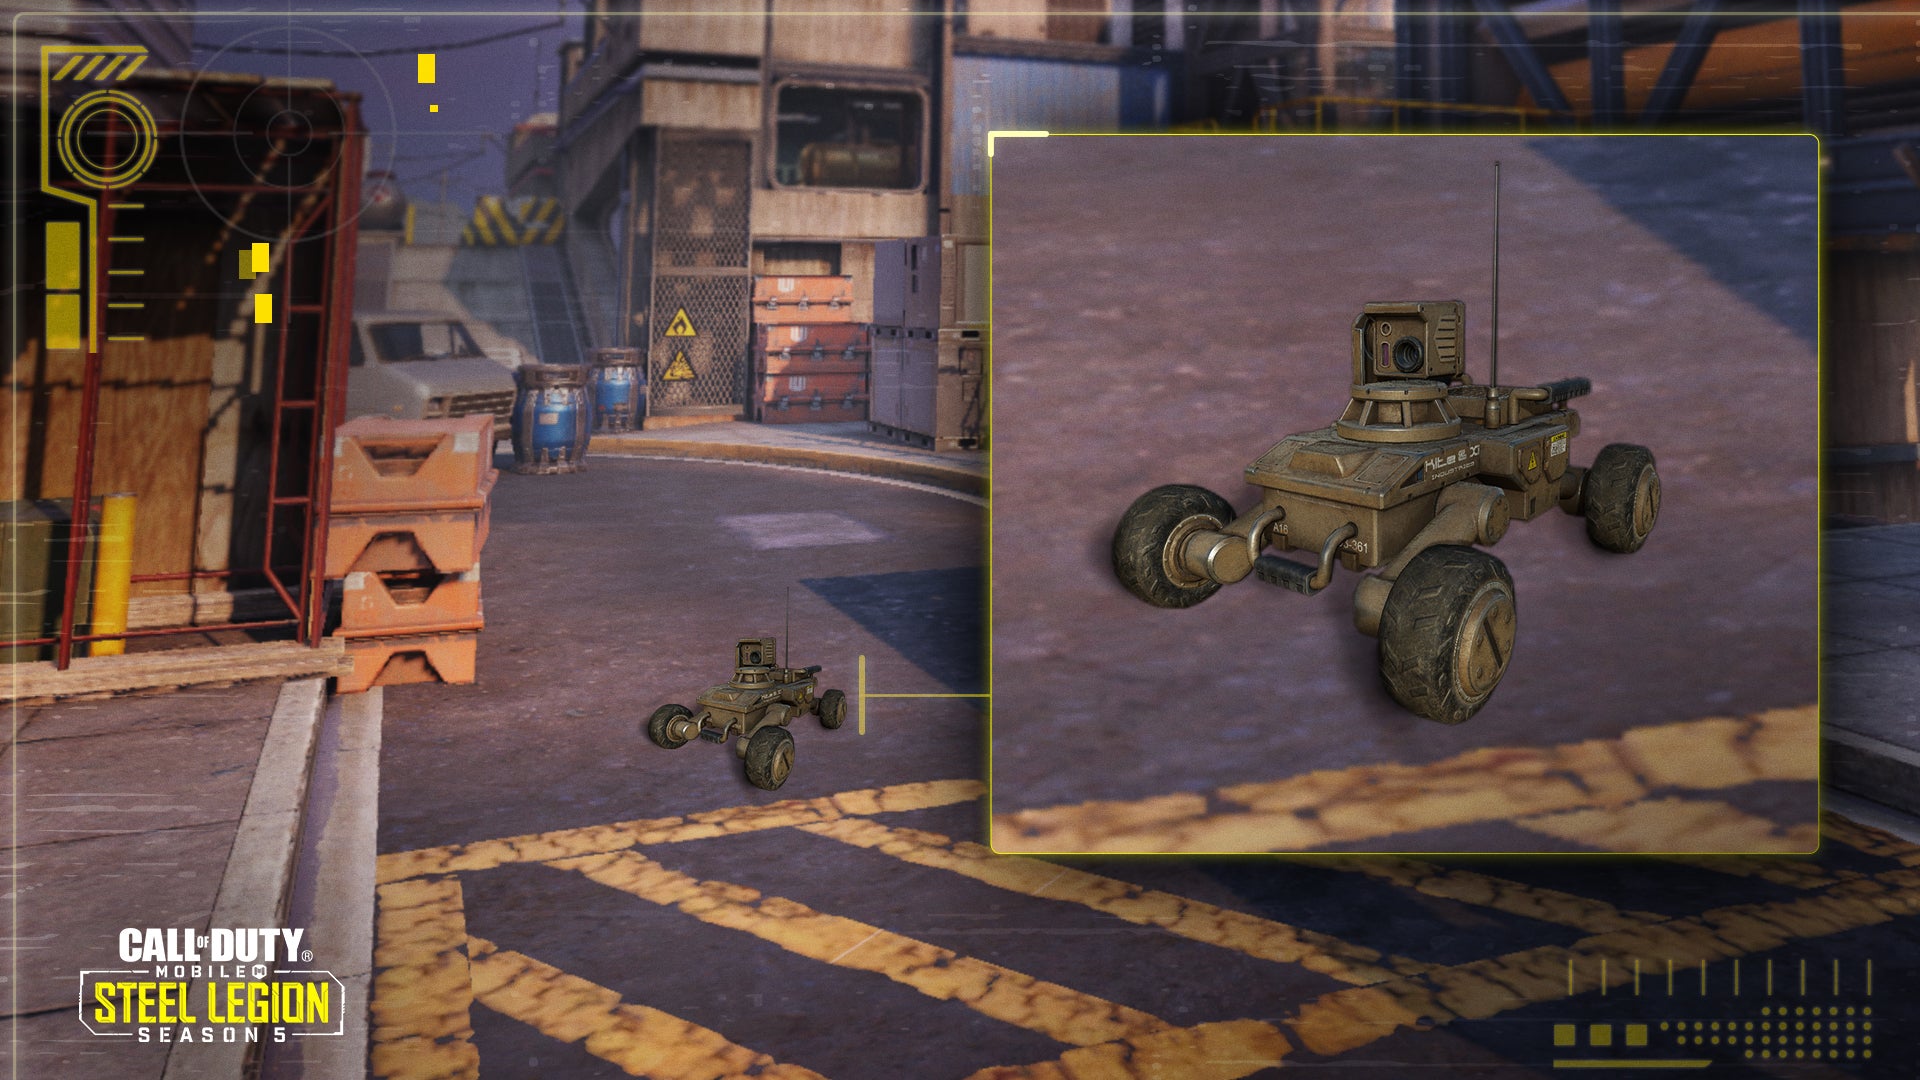 الإصدار 1.0.11 من "Call of Duty: Mobile" متاح الآن بشكل مباشر لتقديم الدعم للموسم التالي "Steel Legion" والخرائط الجديدة والموسم الجديد المصنف والمزيد 4